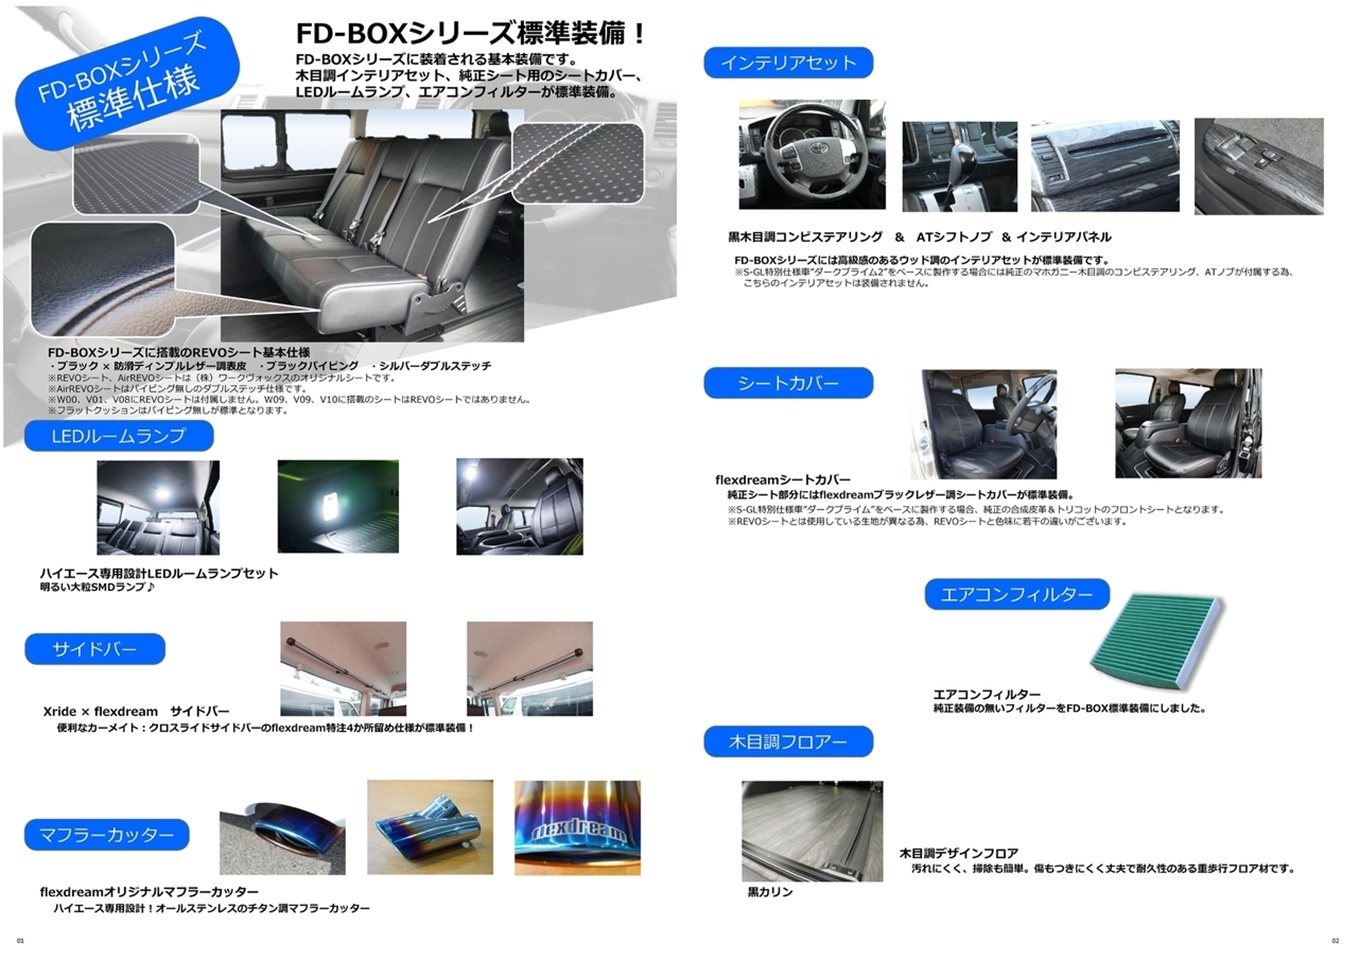 ハイエースワイドボディーバン ライトキャンピングカー【FD-BOX V08-M】